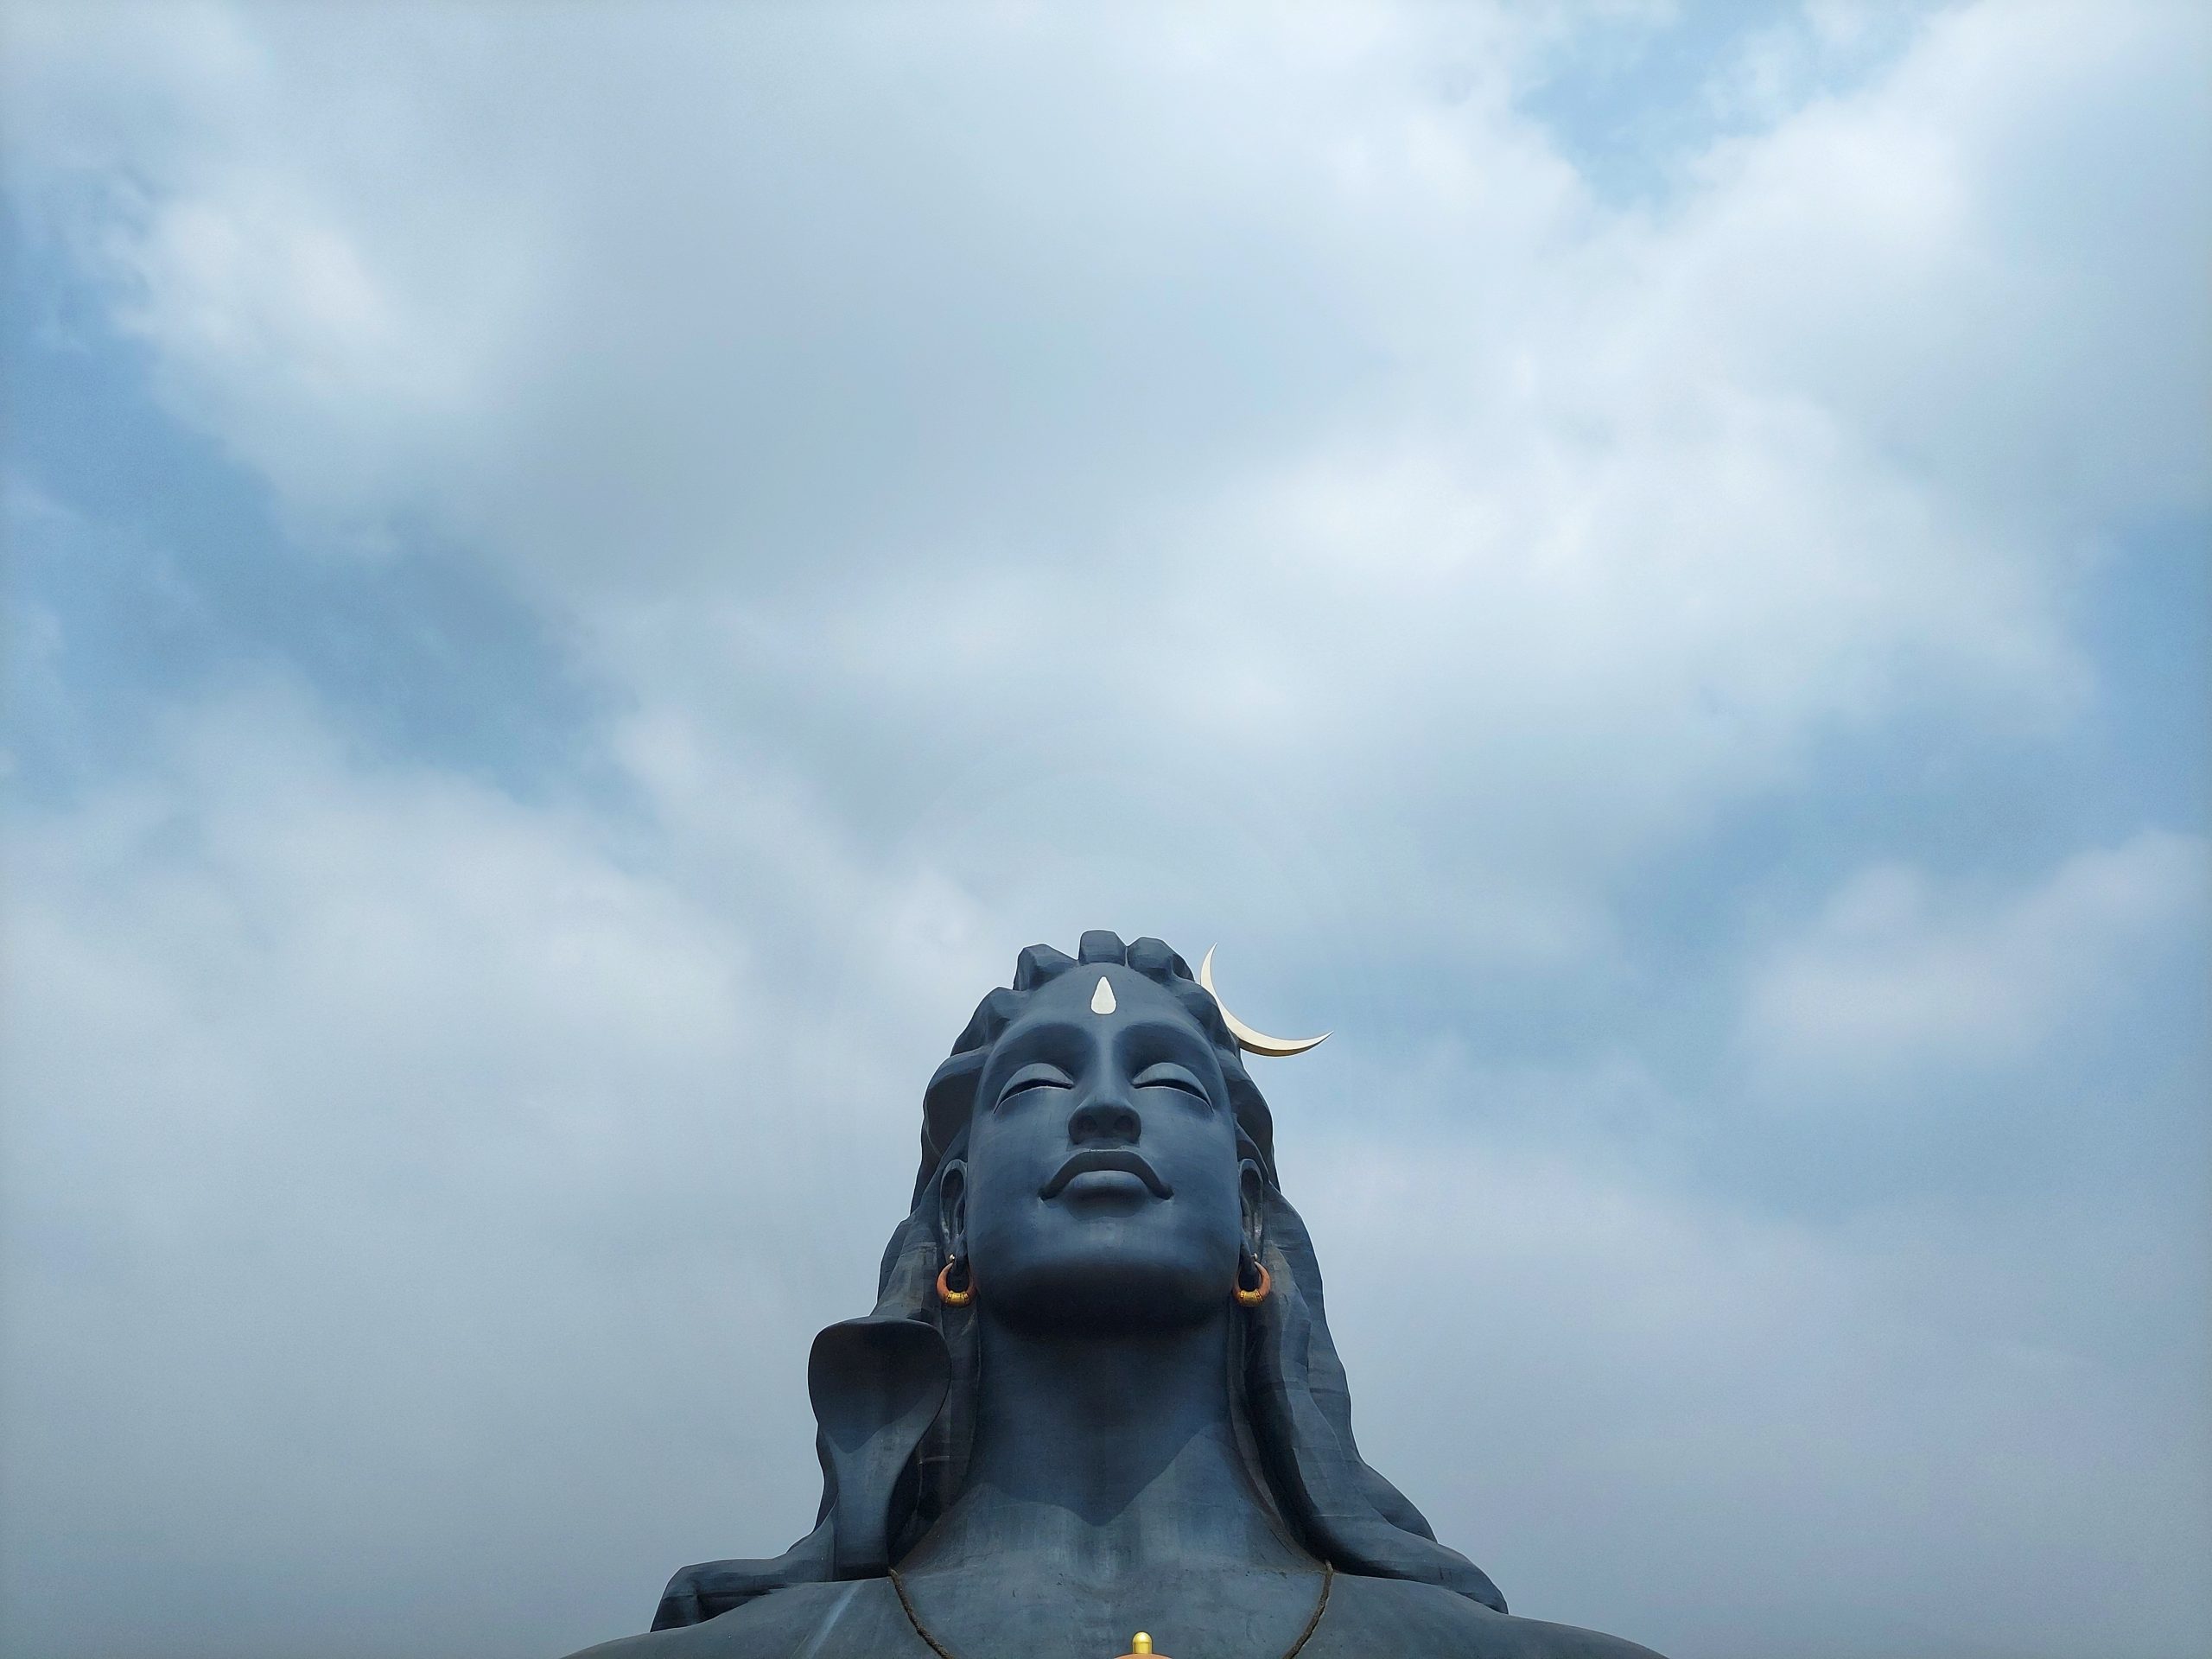 Lord Shiva statue Coimbatore - PixaHive